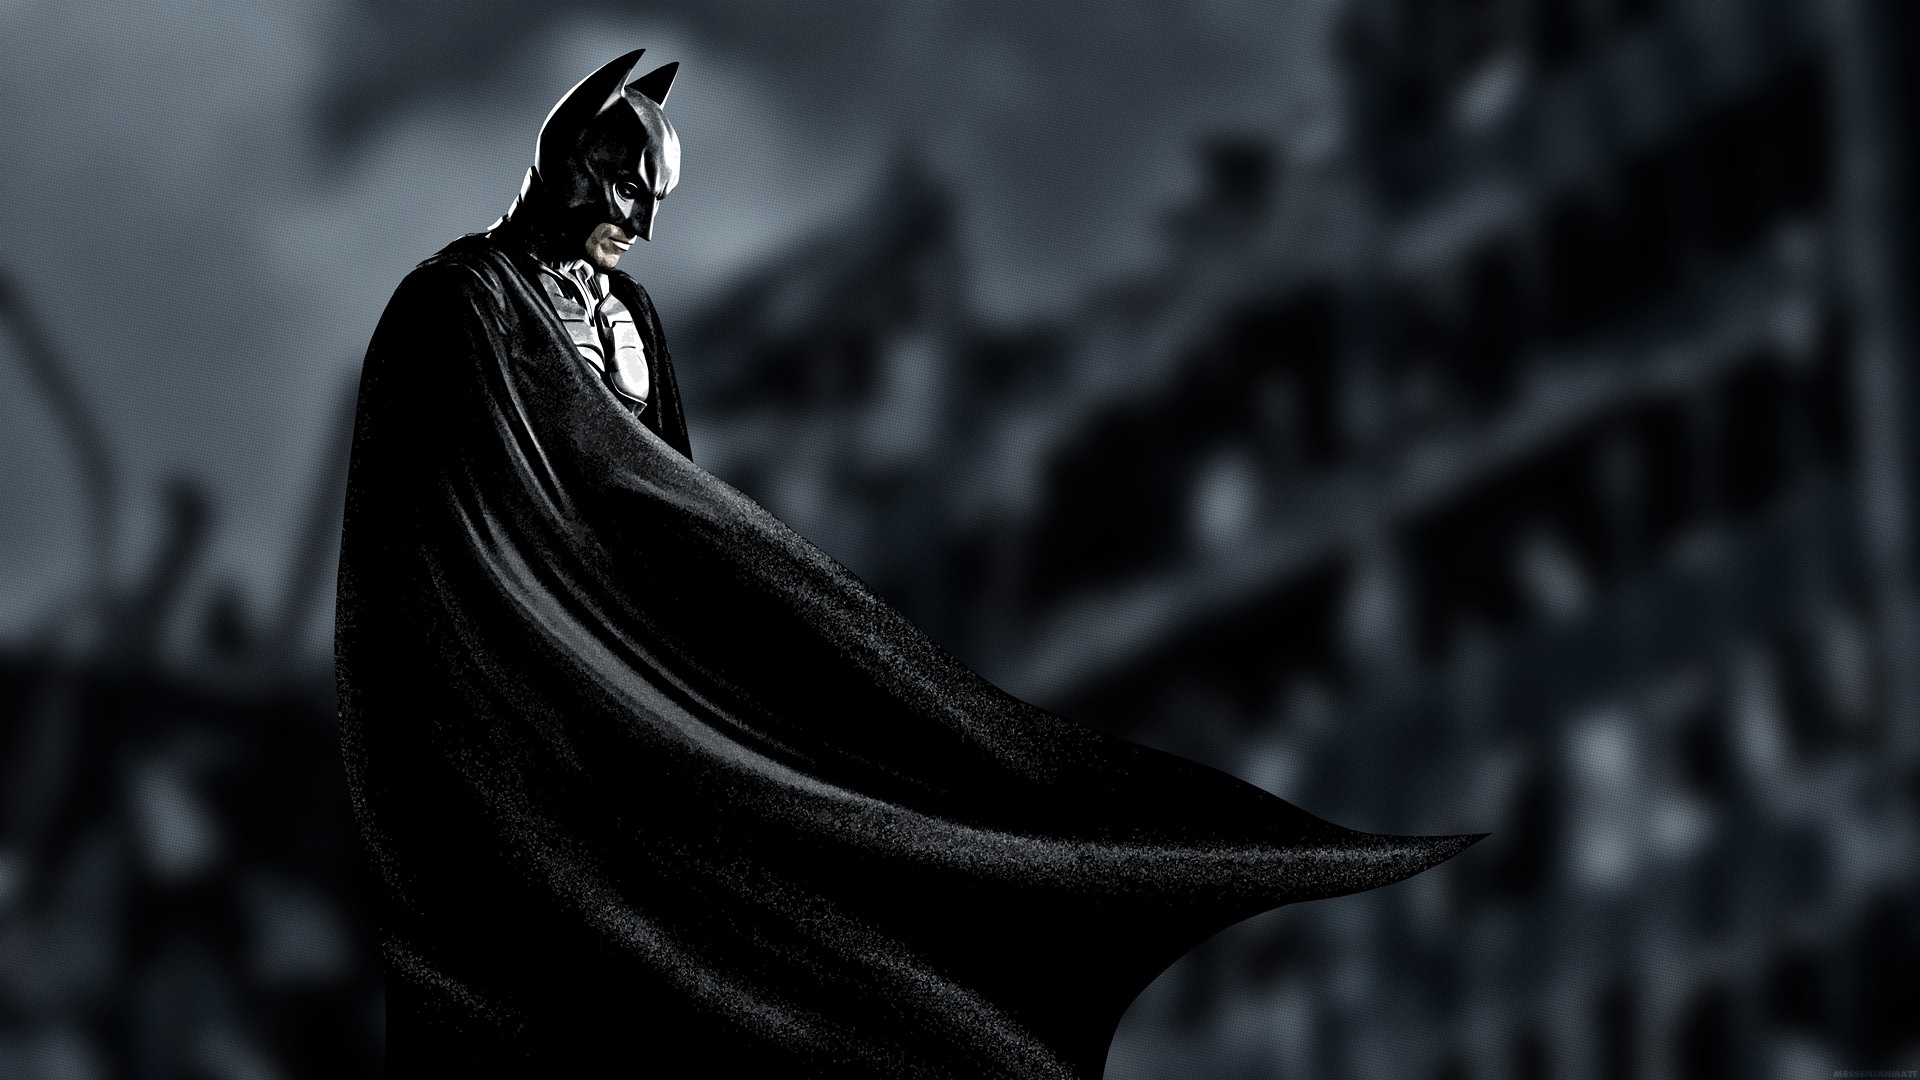 Batman Tortured Hero Or Demented Soul